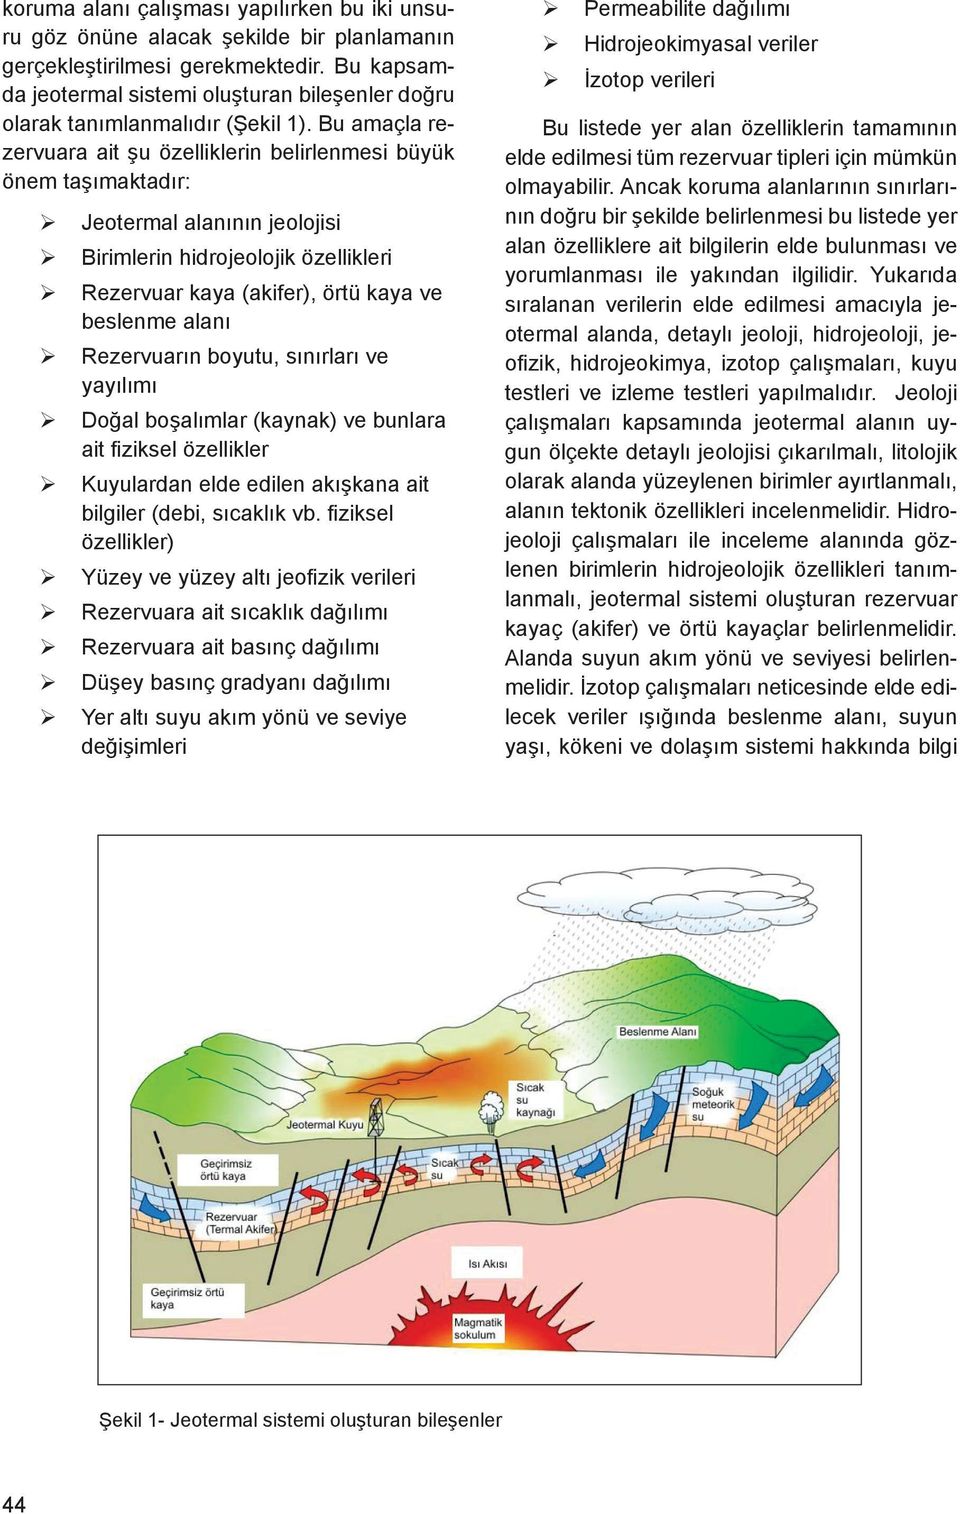 Bu amaçla rezervuara ait şu özelliklerin belirlenmesi büyük önem taşımaktadır: Jeotermal alanının jeolojisi Birimlerin hidrojeolojik özellikleri Rezervuar kaya (akifer), örtü kaya ve beslenme alanı